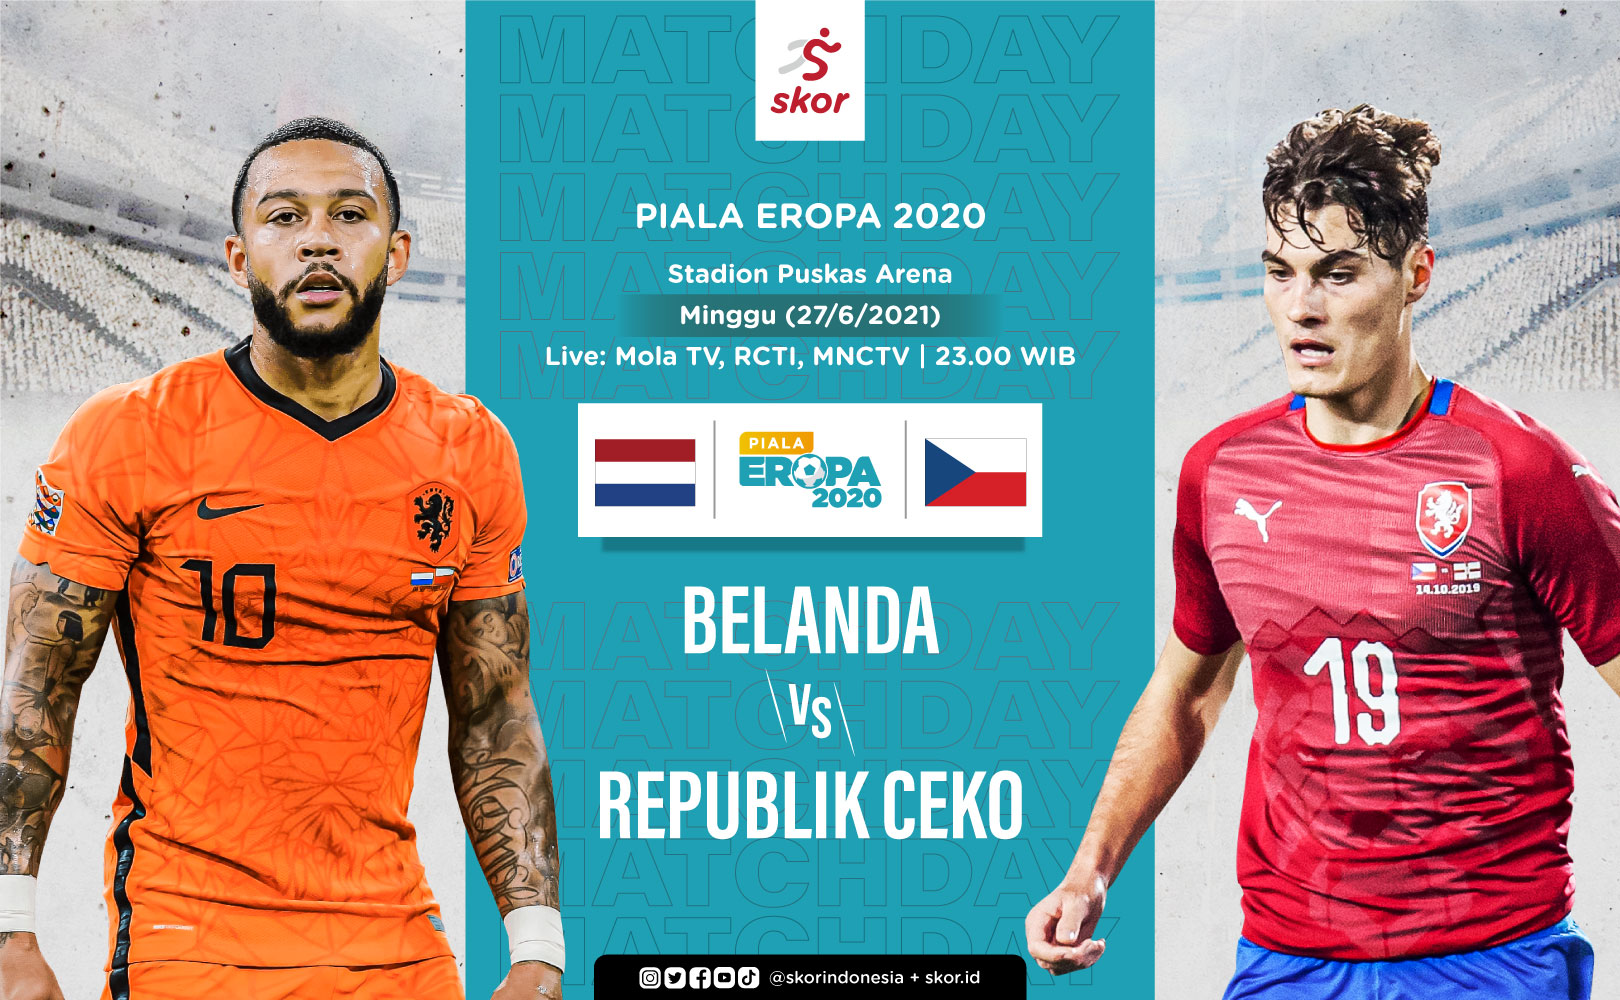 Prediksi Piala Eropa 2020 - Belanda vs Republik Ceko: Misi De Oranje Lanjutkan Tren Positif